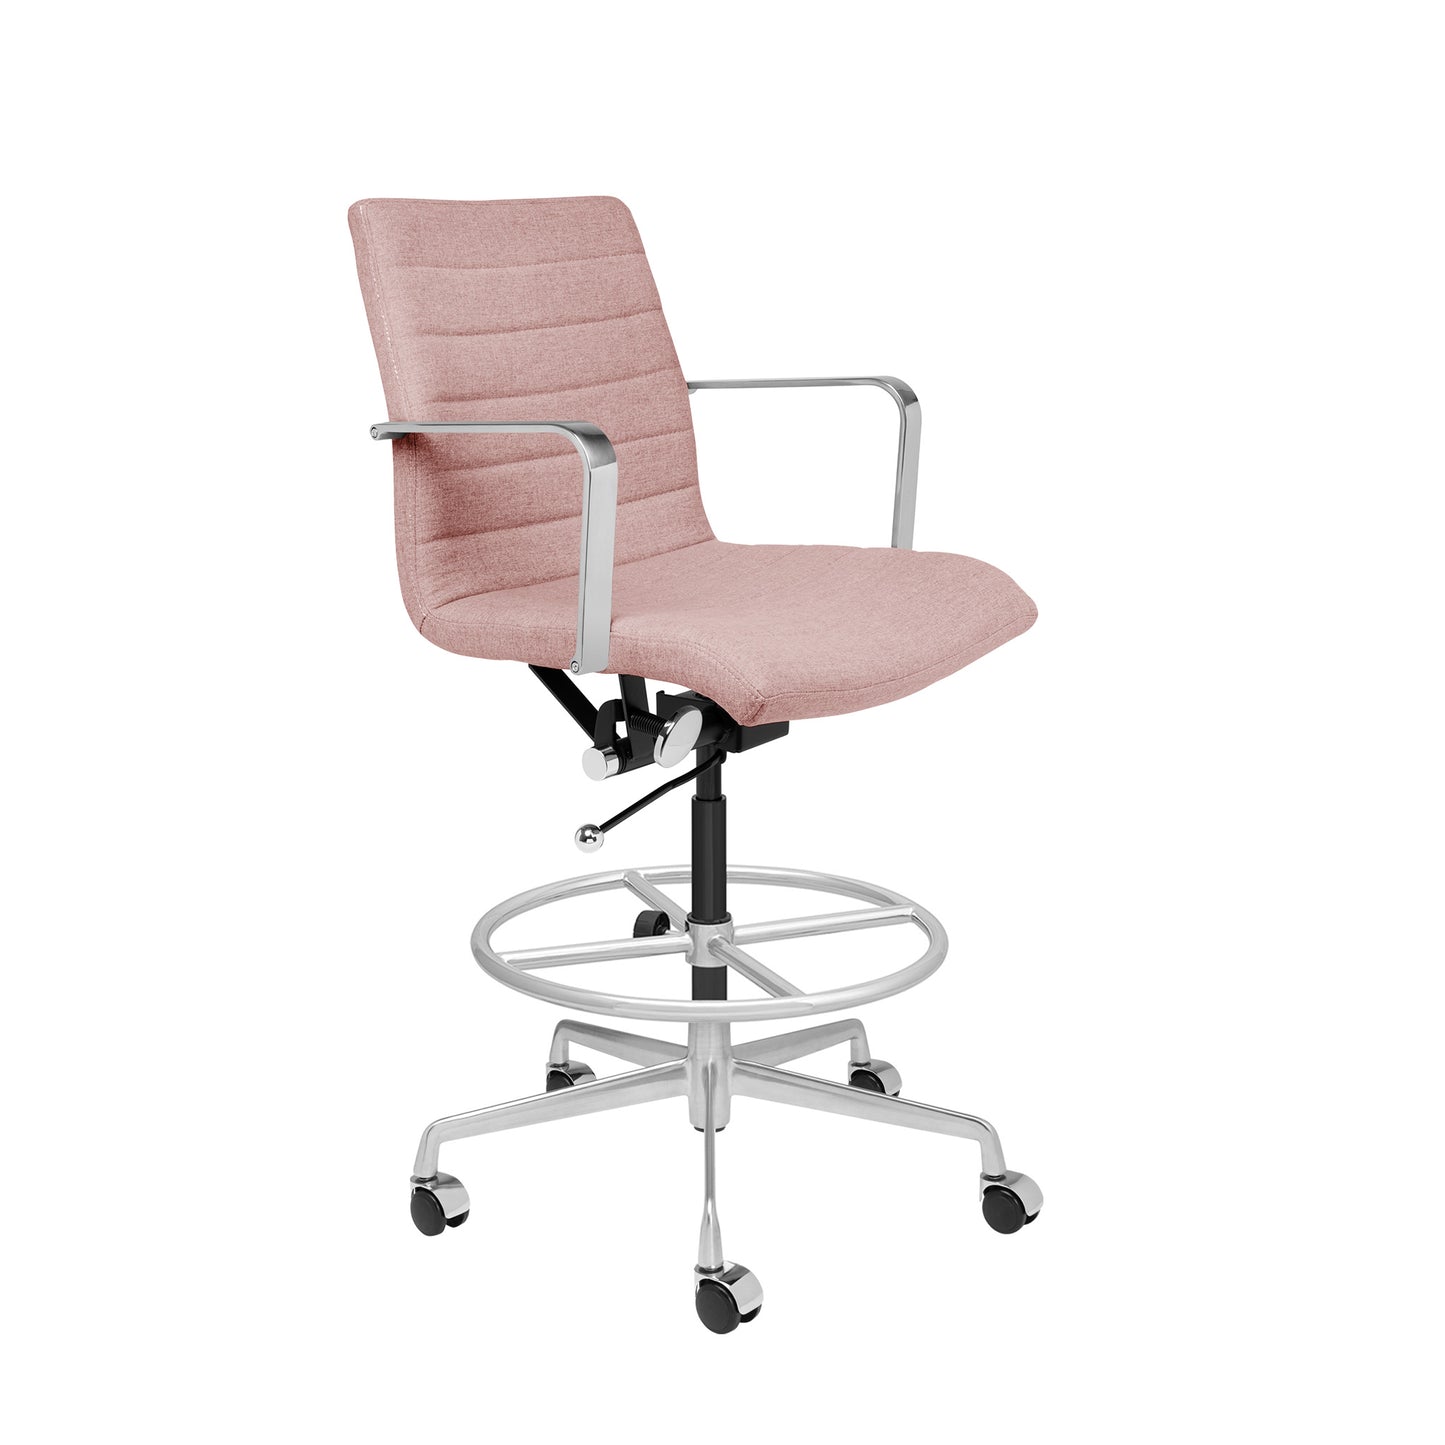 SHIPS MAY 17TH - SOHO II Ribbed Drafting Chair (Coral Pink Fabric)